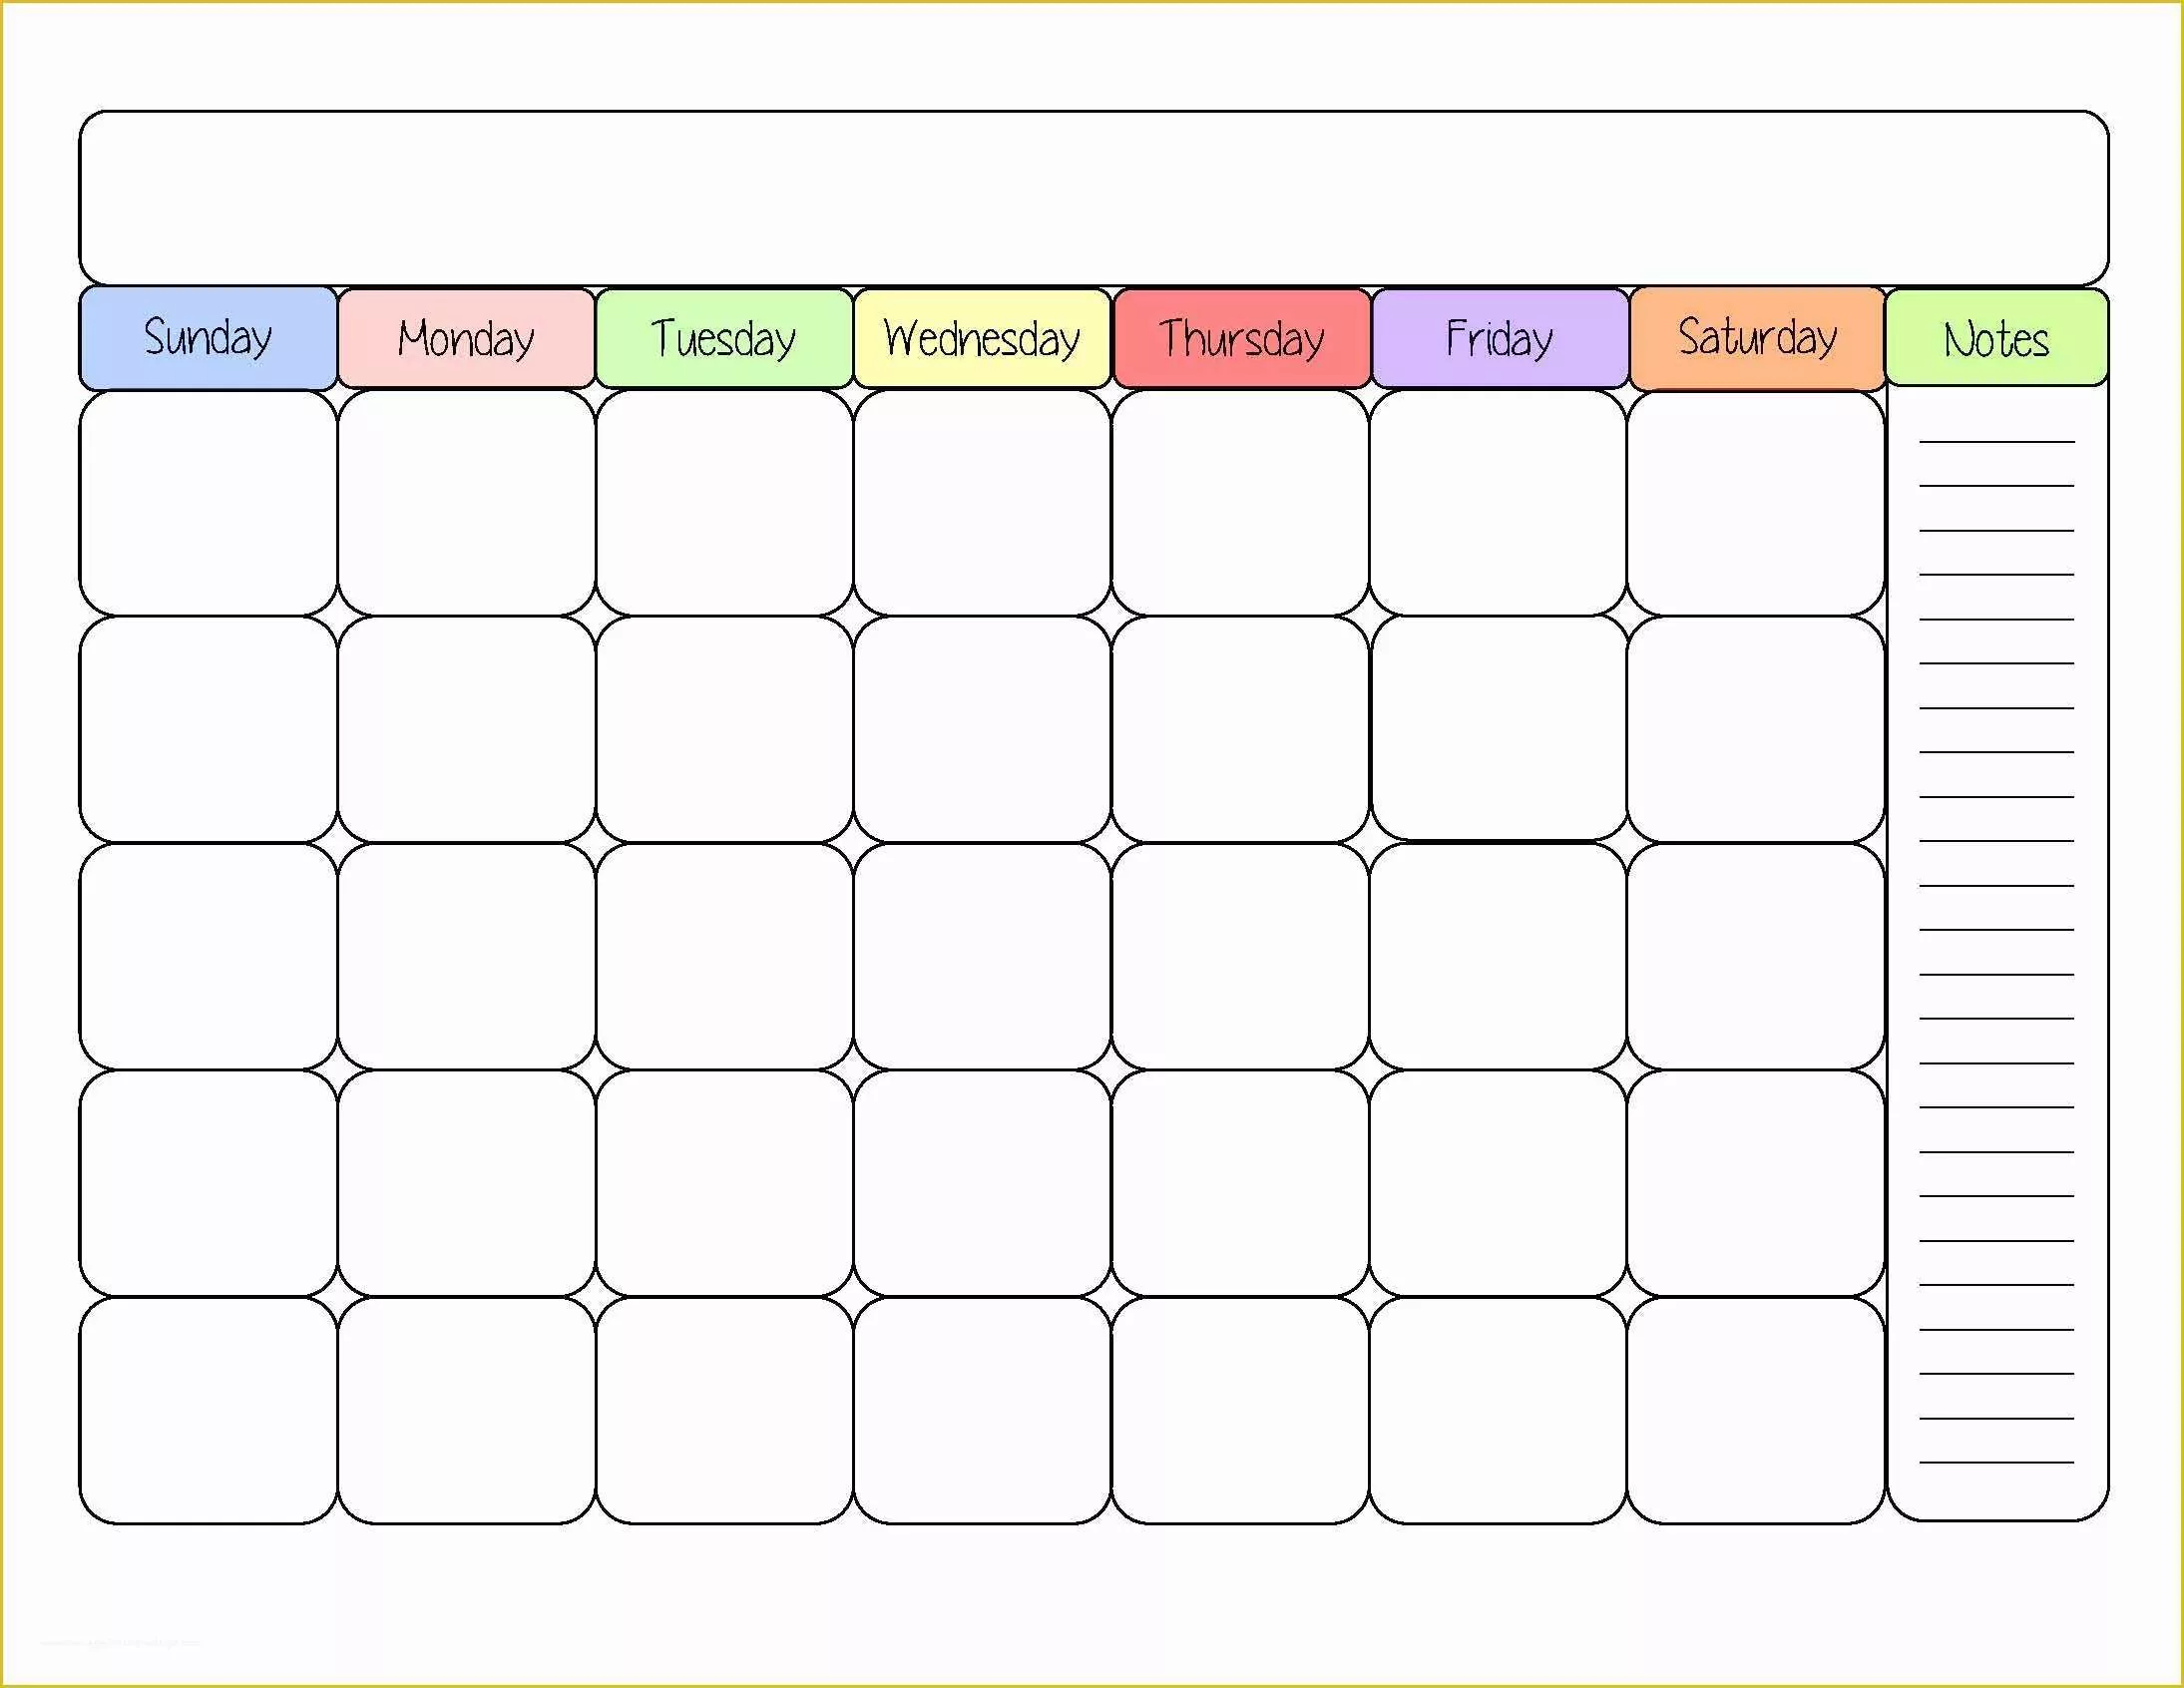 Free Online Schedule Template Of Printable Weekly Calendars – 2017 Printable Calendar